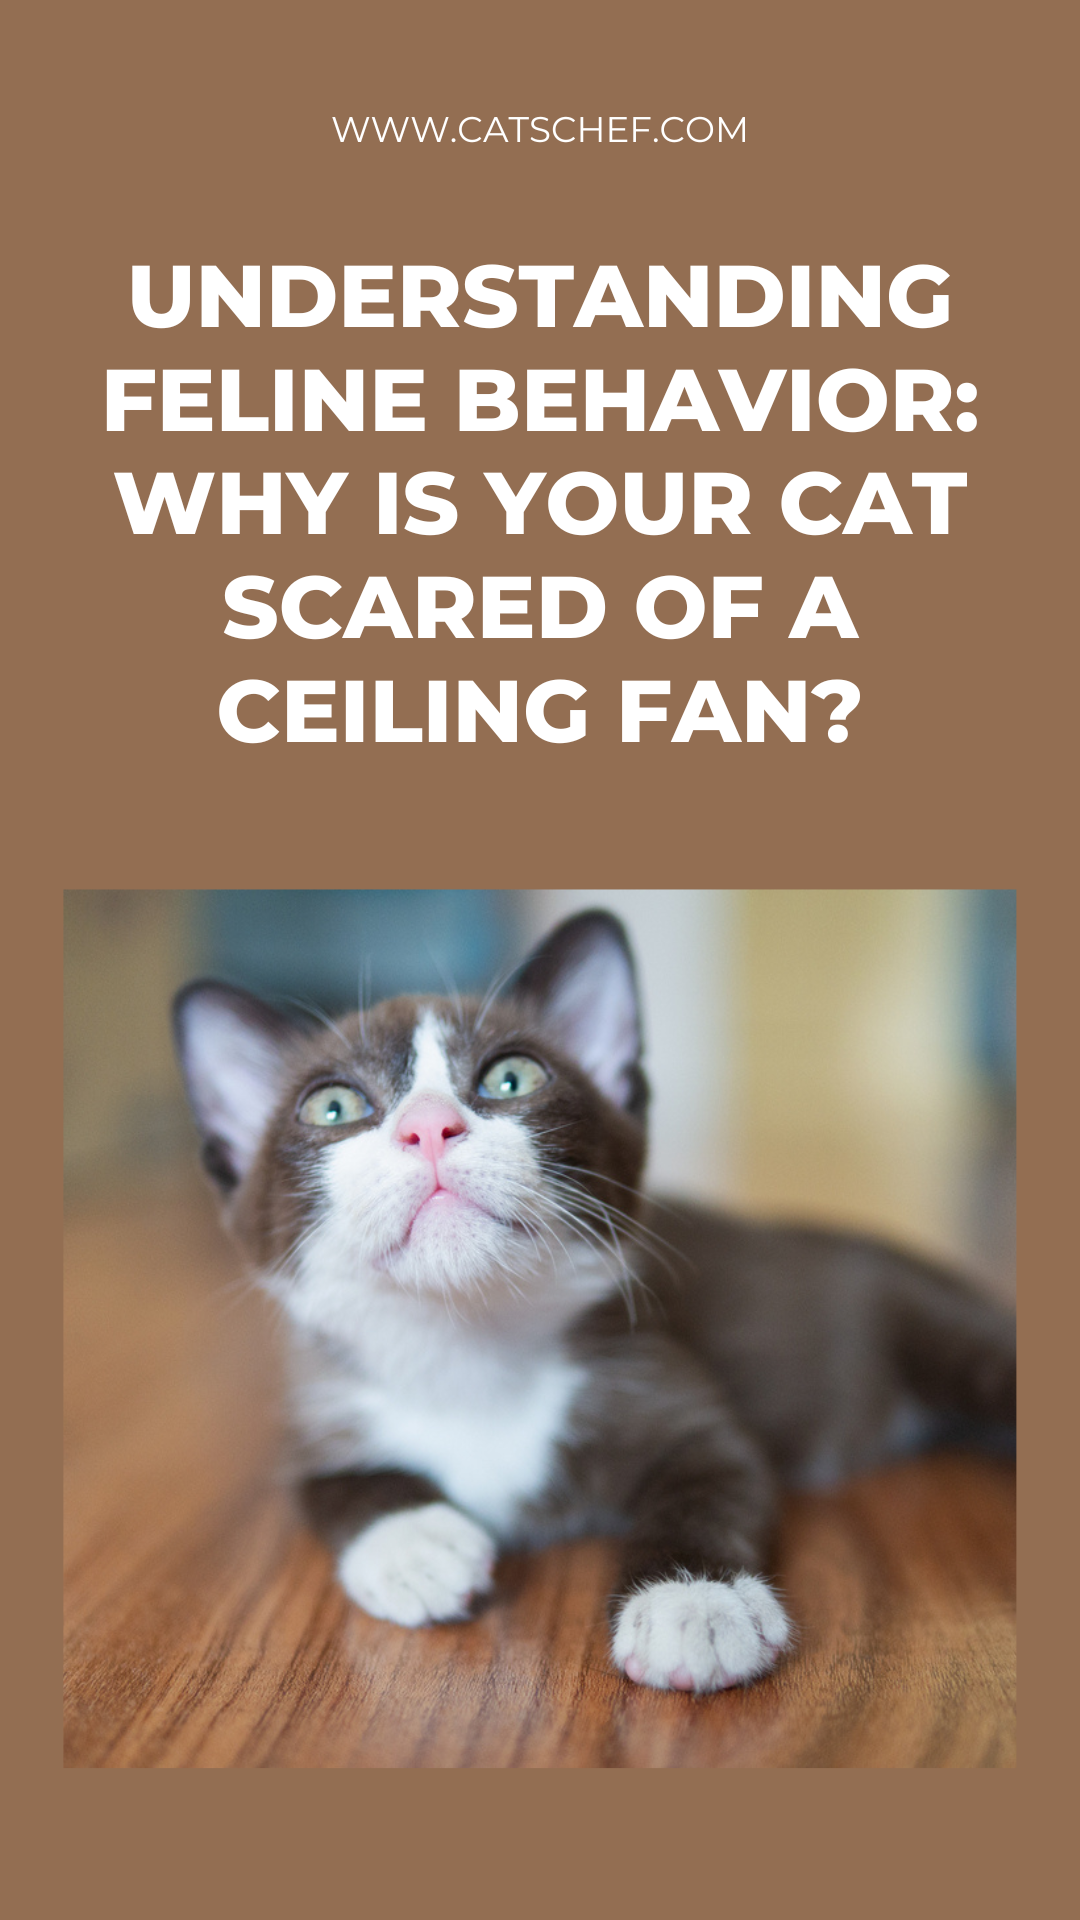 Kedi Davranışını Anlamak: Kediniz Tavan Vantilatöründen Neden Korkuyor?